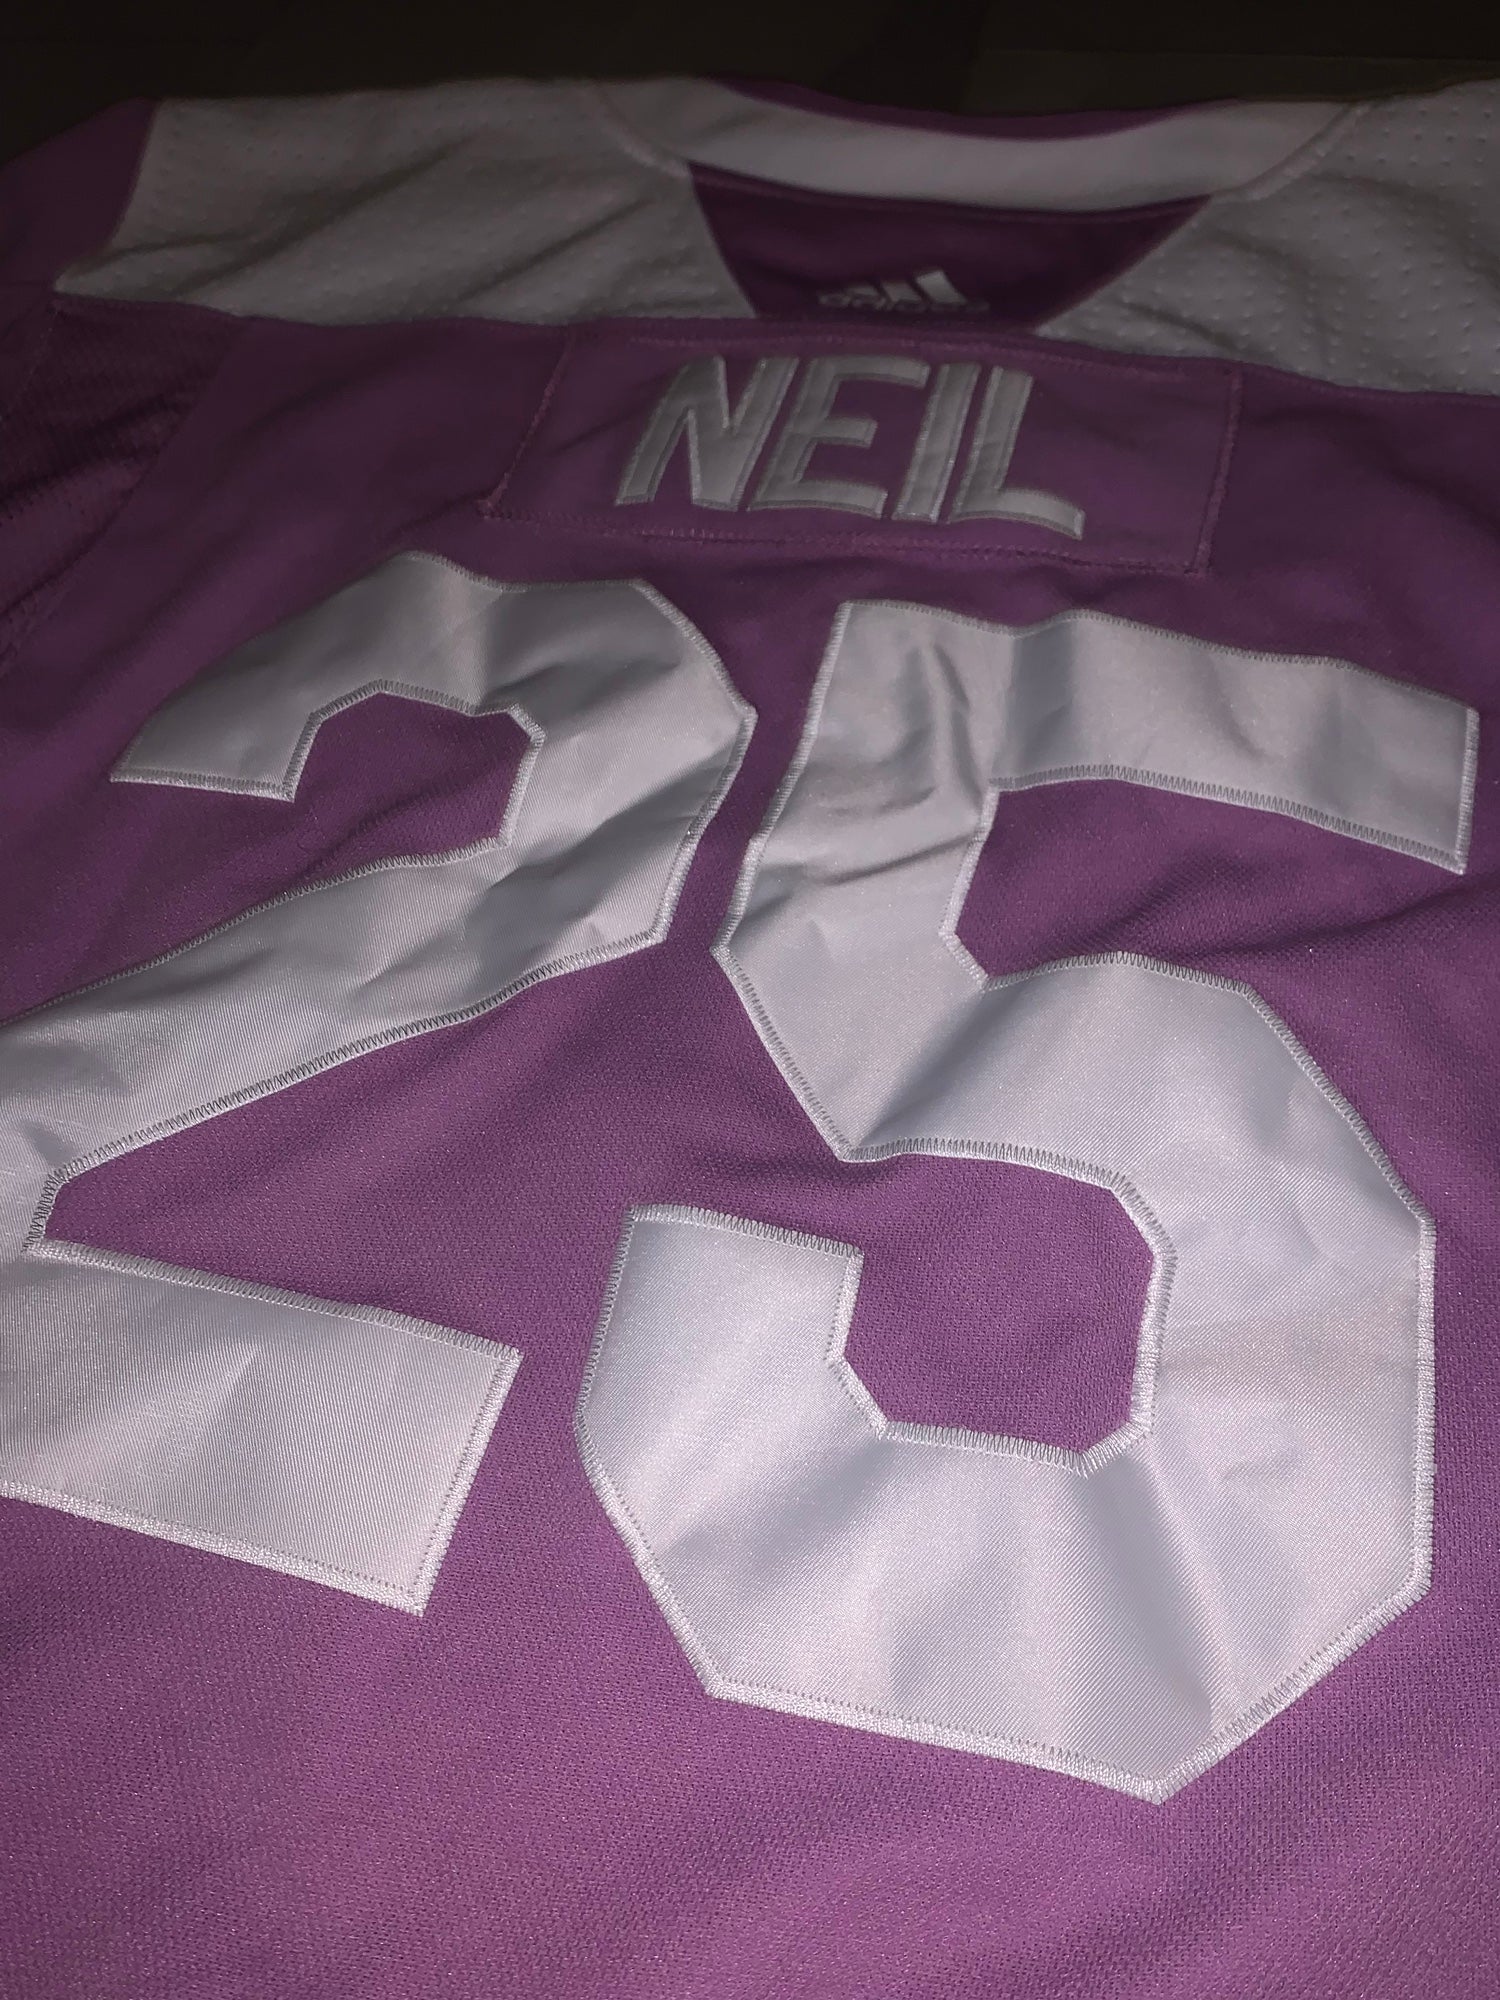 Ottawa Senators No25 Chris Neil Purple Fights Cancer Womens Jersey